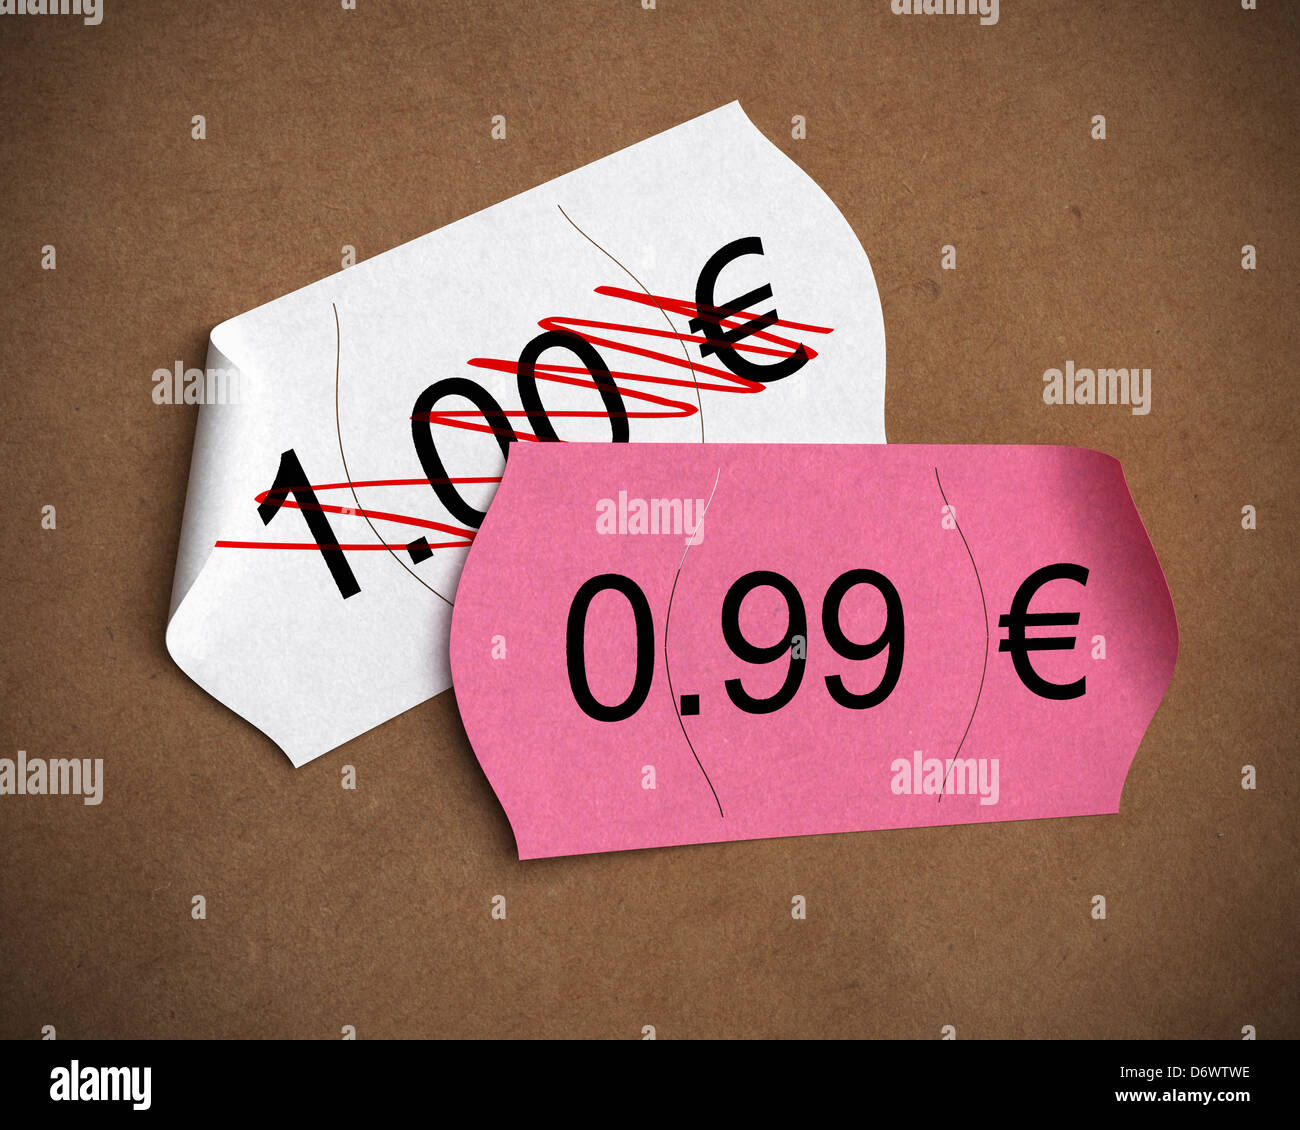 0,99 € Prix psychologique écrit sur une étiquette rose sur un autre où il est écrit 1,00 euro, fond papier kraft brun Banque D'Images